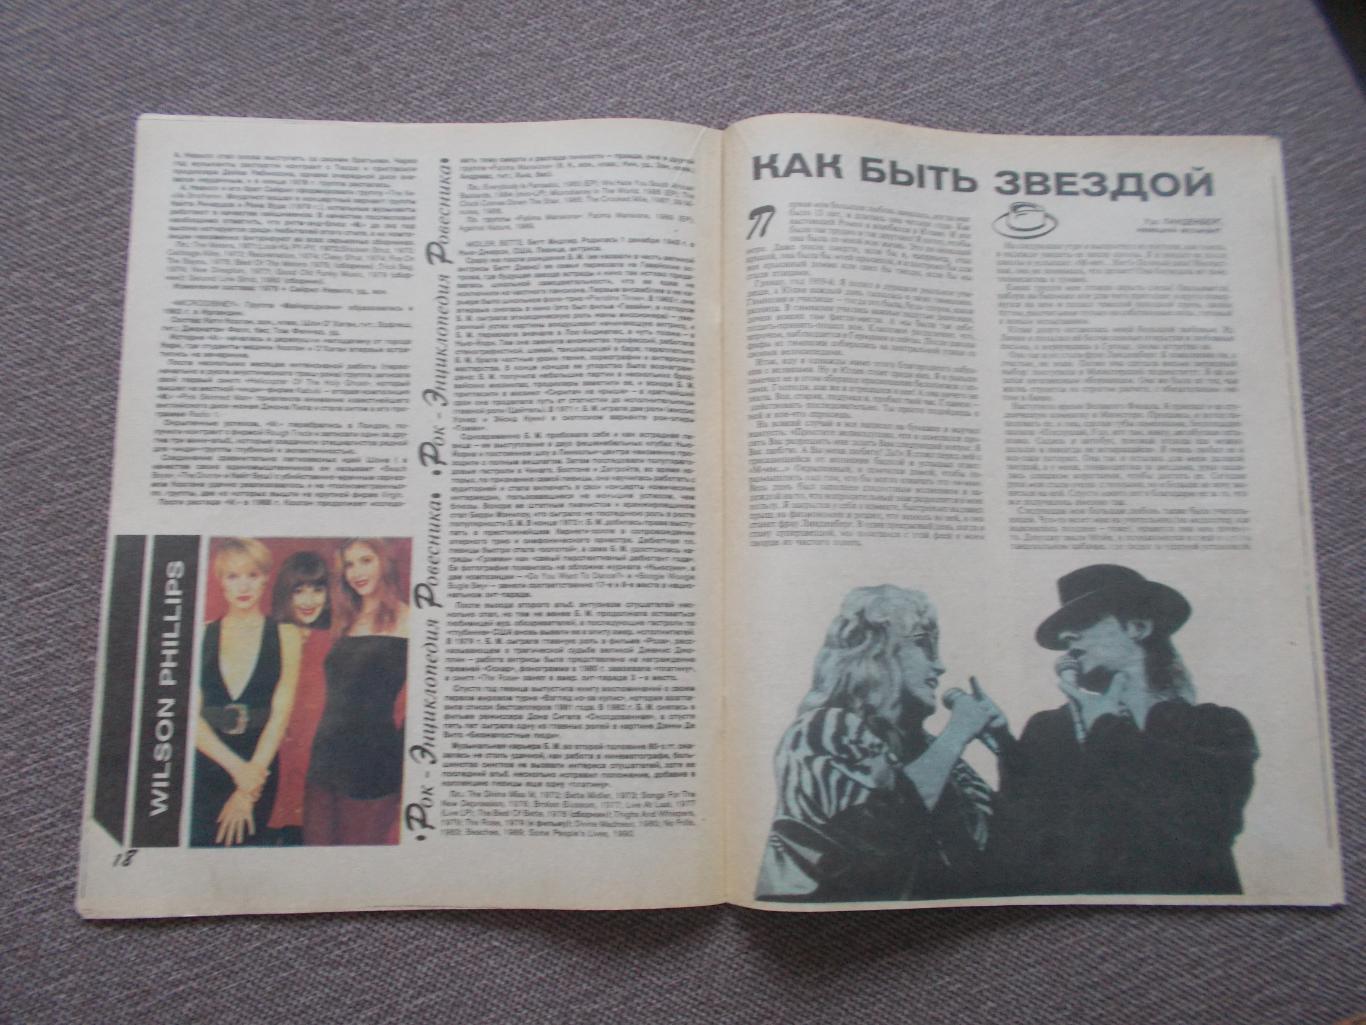 Журнал СССР :Ровесник№ 12 (декабрь) 1991 г. (Молодежный музыкальный журнал 6